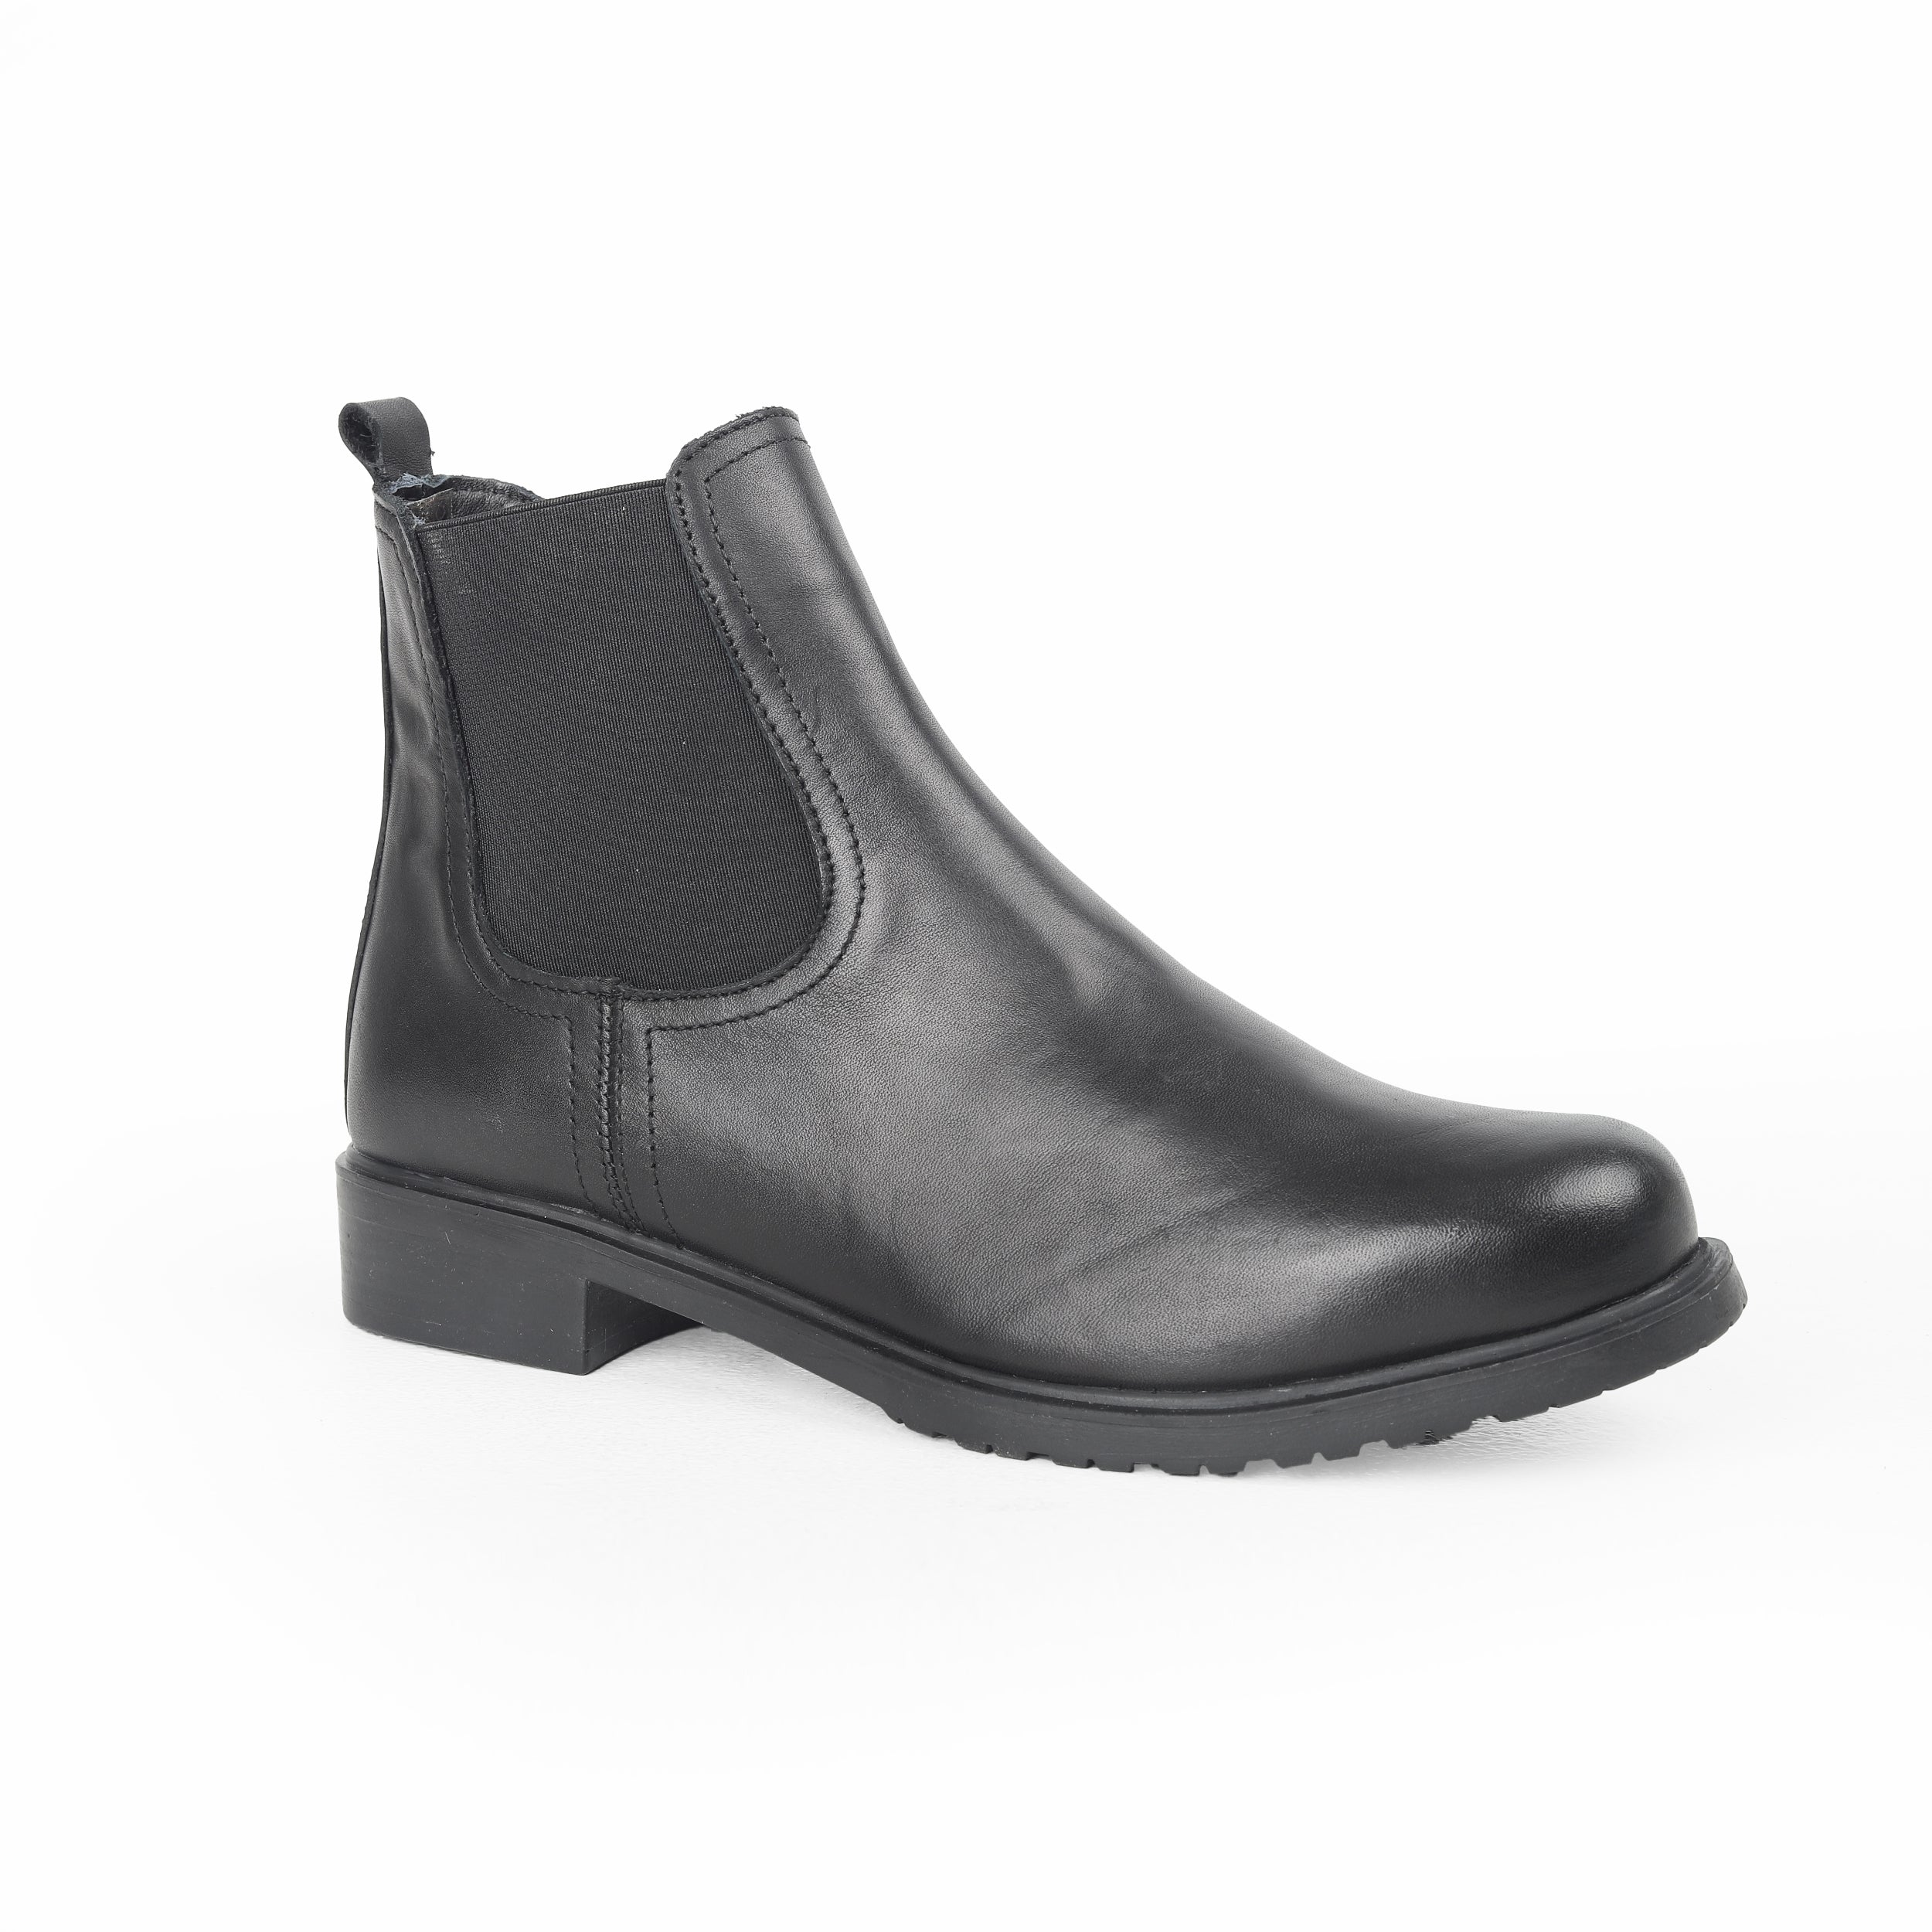 Flex Half Boots For Women 14203019